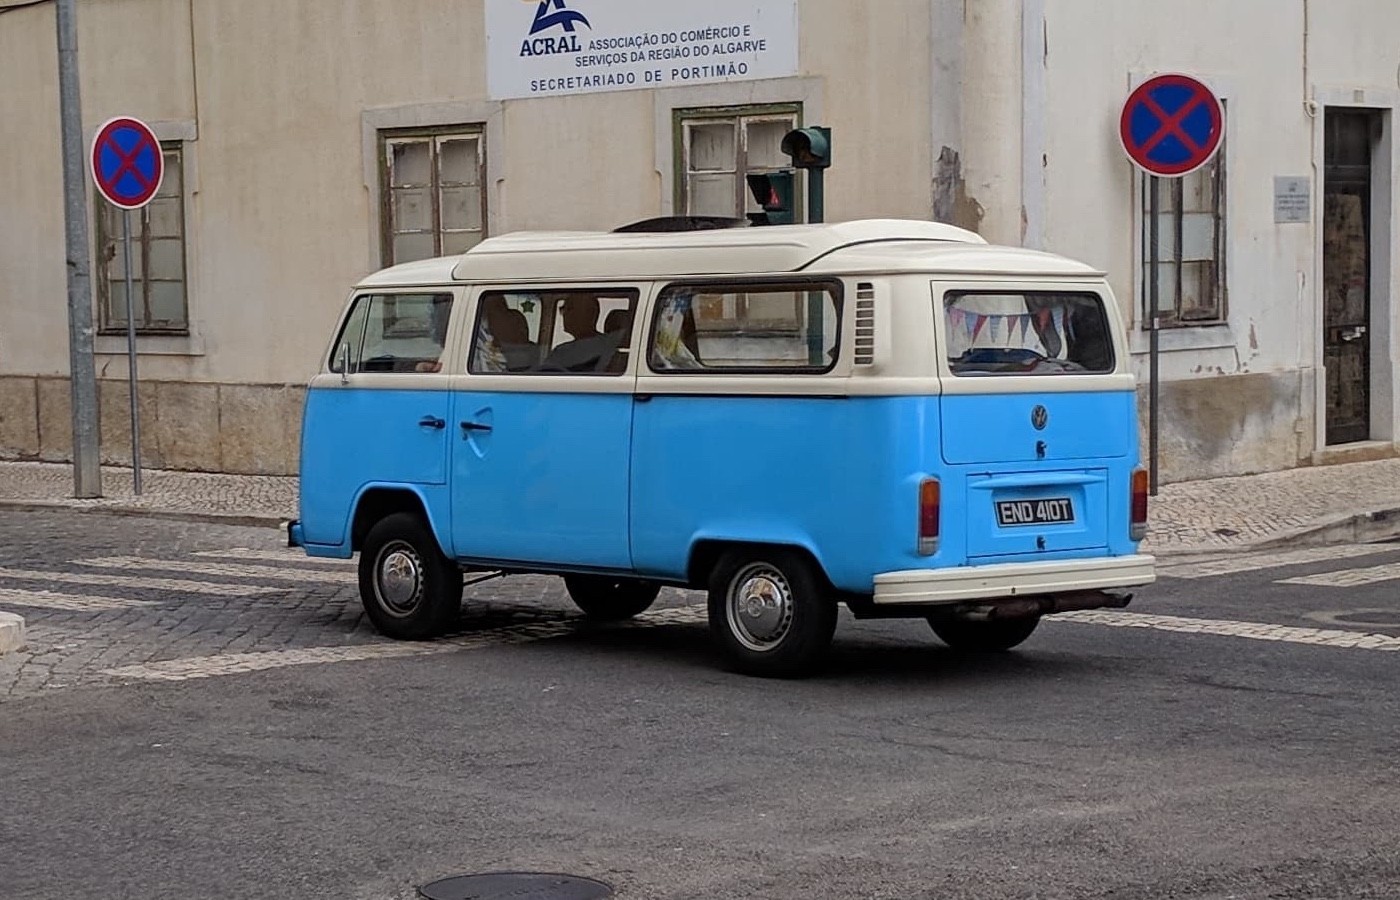 RHD VW campervan seen in Portugal